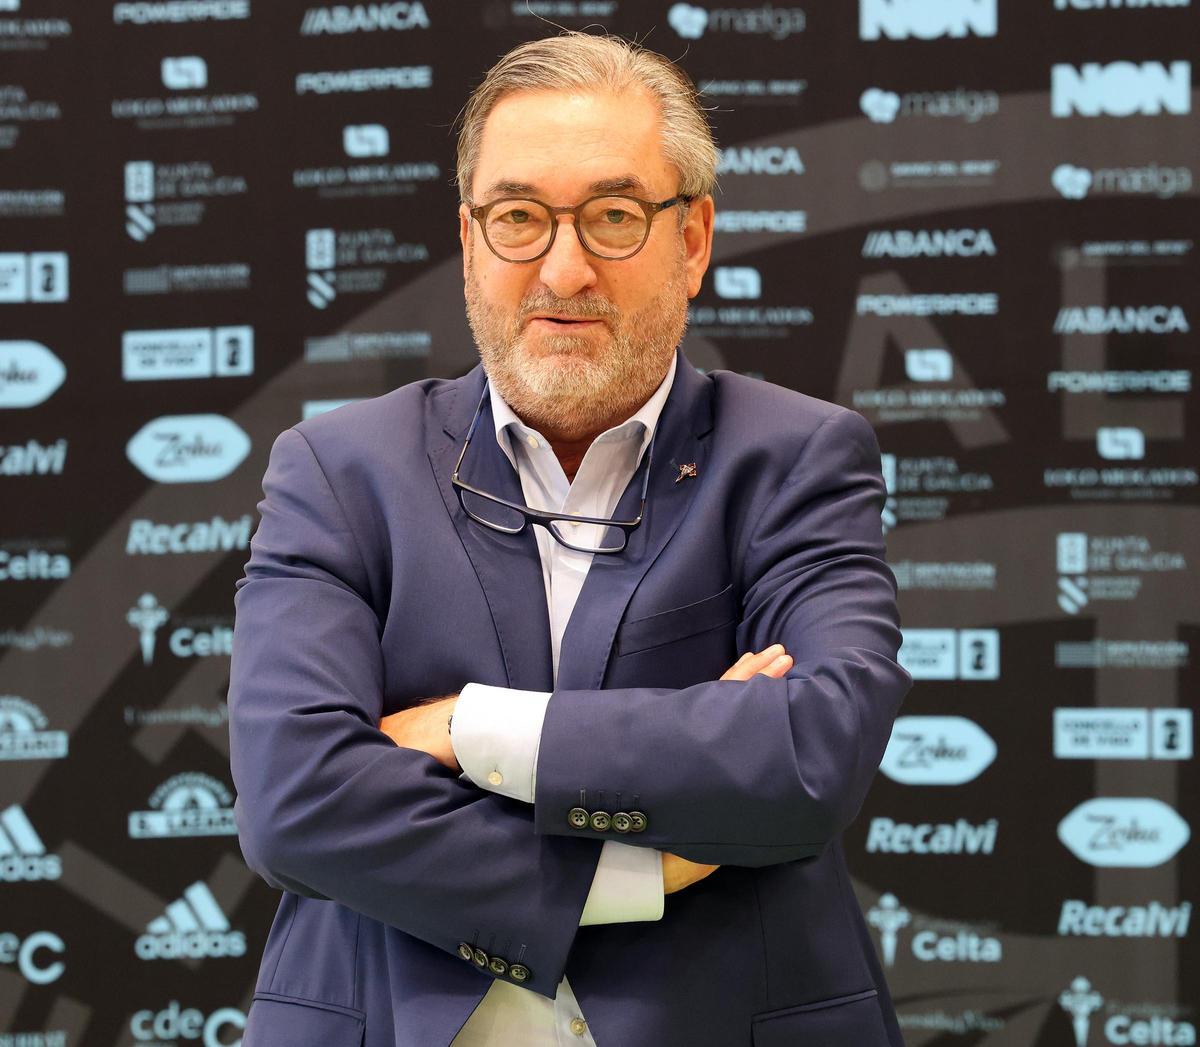 El presidente del Celta Zorka Recalvi, Carlos Álvarez.